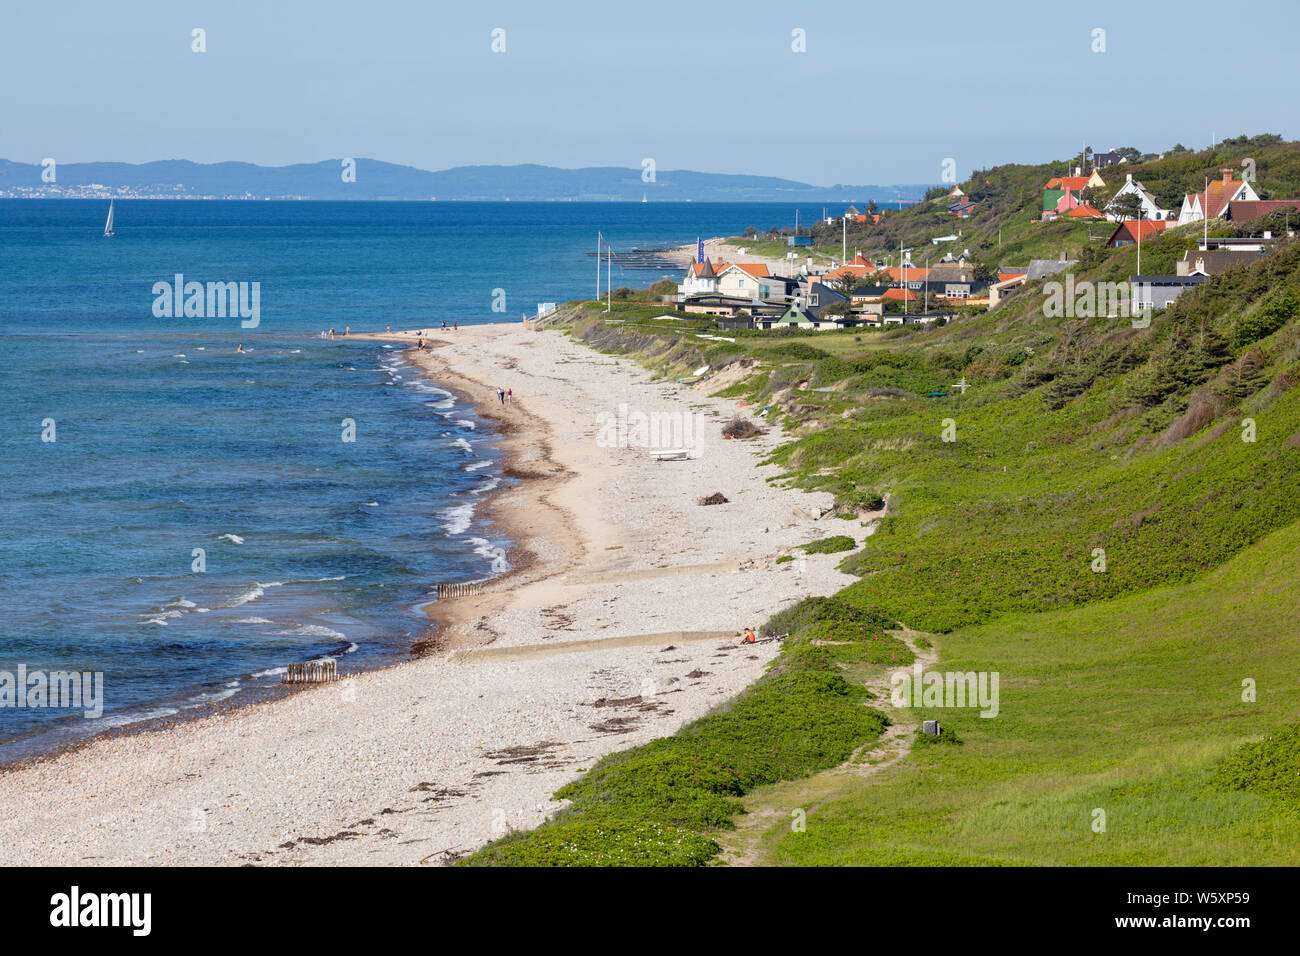 Vista lungo la spiaggia e il villaggio per la terraferma svedese in distanza, Rageleje, Regione Hovedstaden, Zelanda, Danimarca, Europa Foto Stock